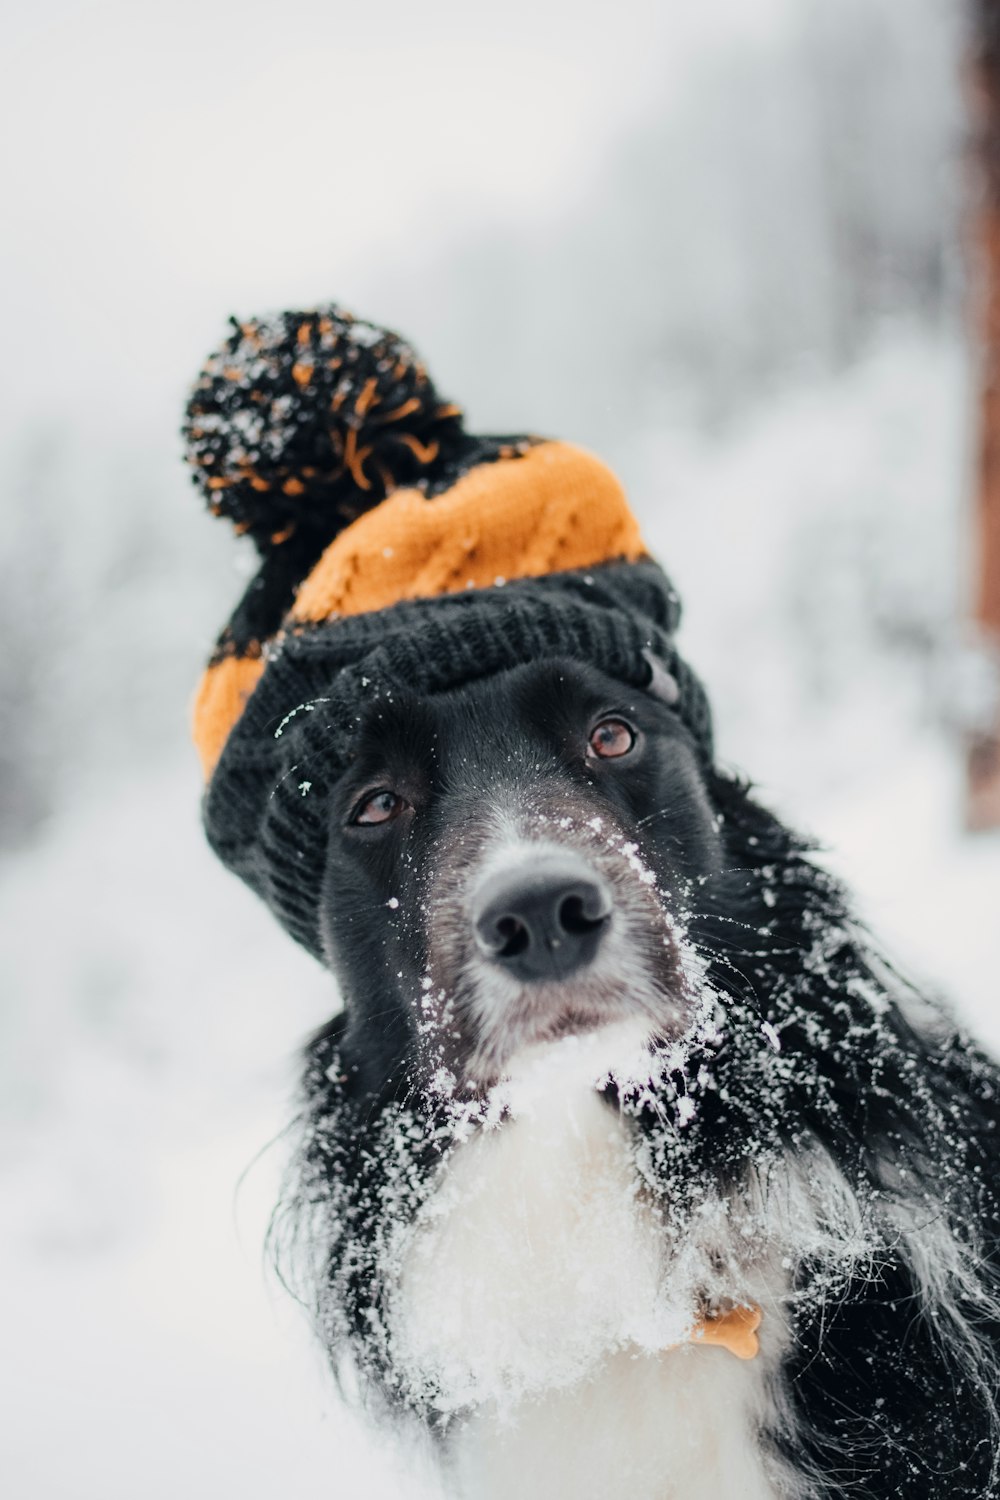 chien adulte à poil court assis neige tout en portant un chapeau orange et noir